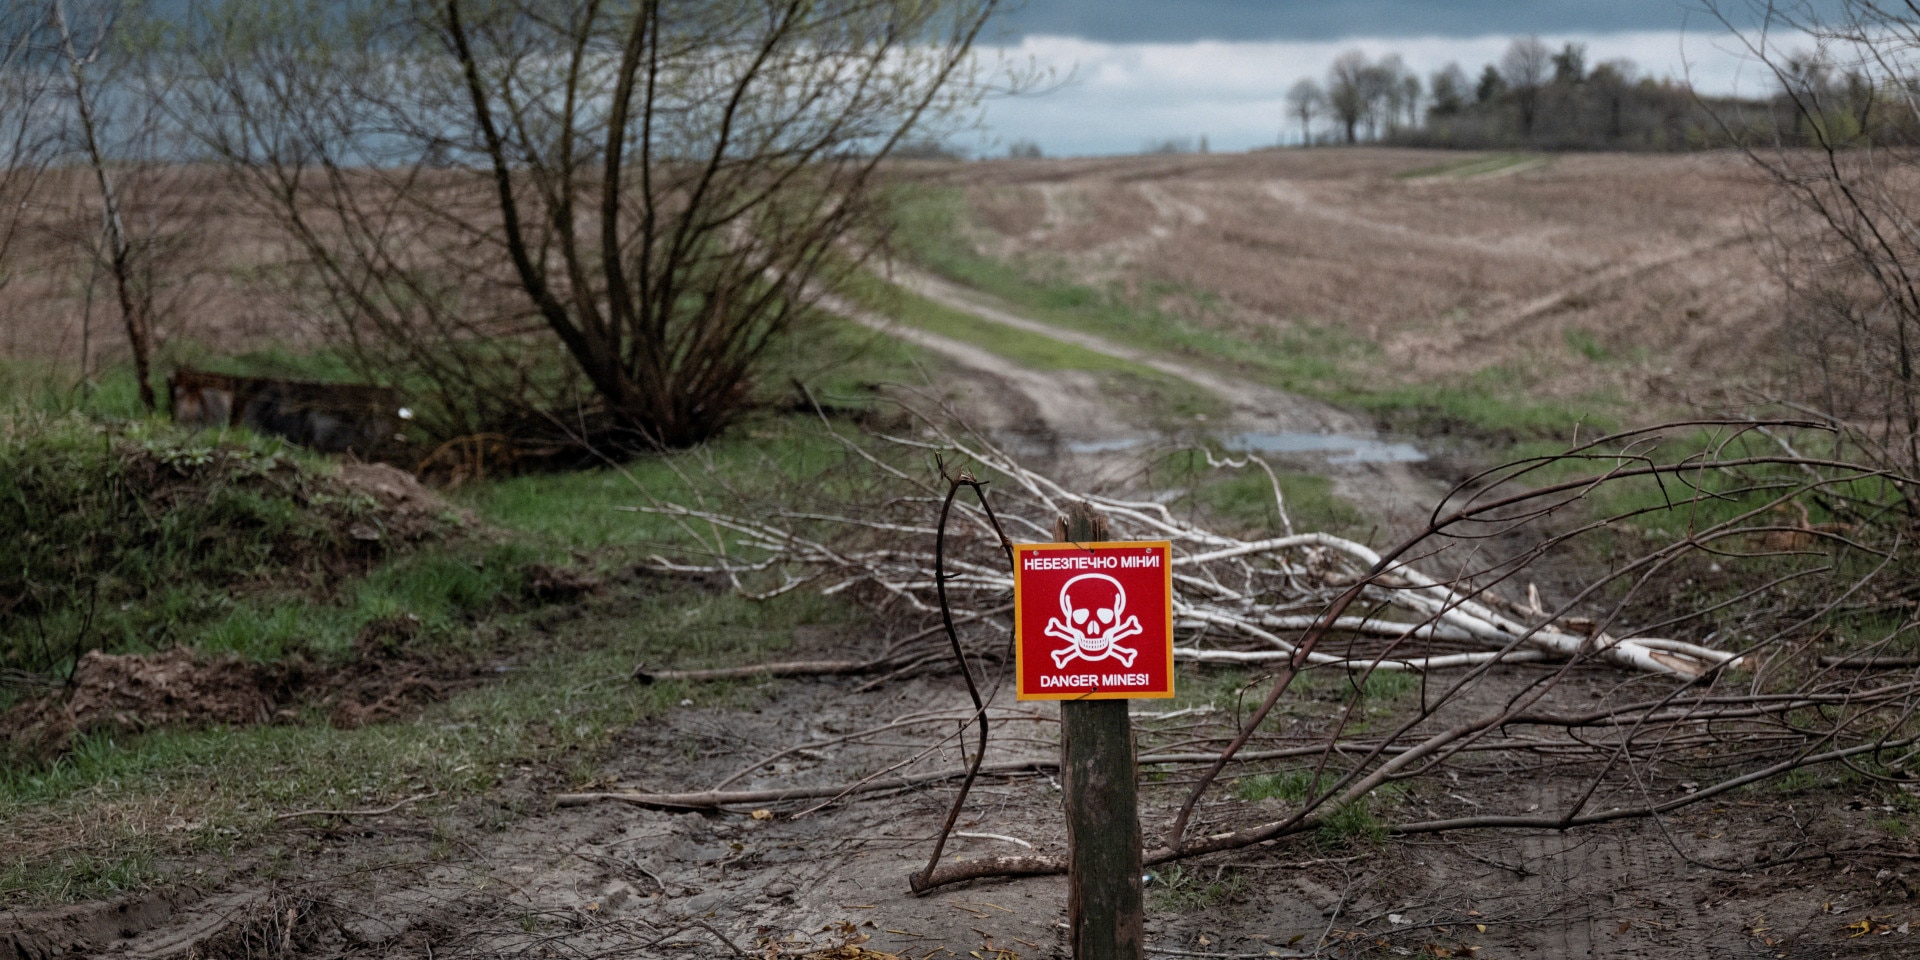 Un panneau rouge avec une tête de mort placé sur un chemin signale la présence d’un champ de mines.